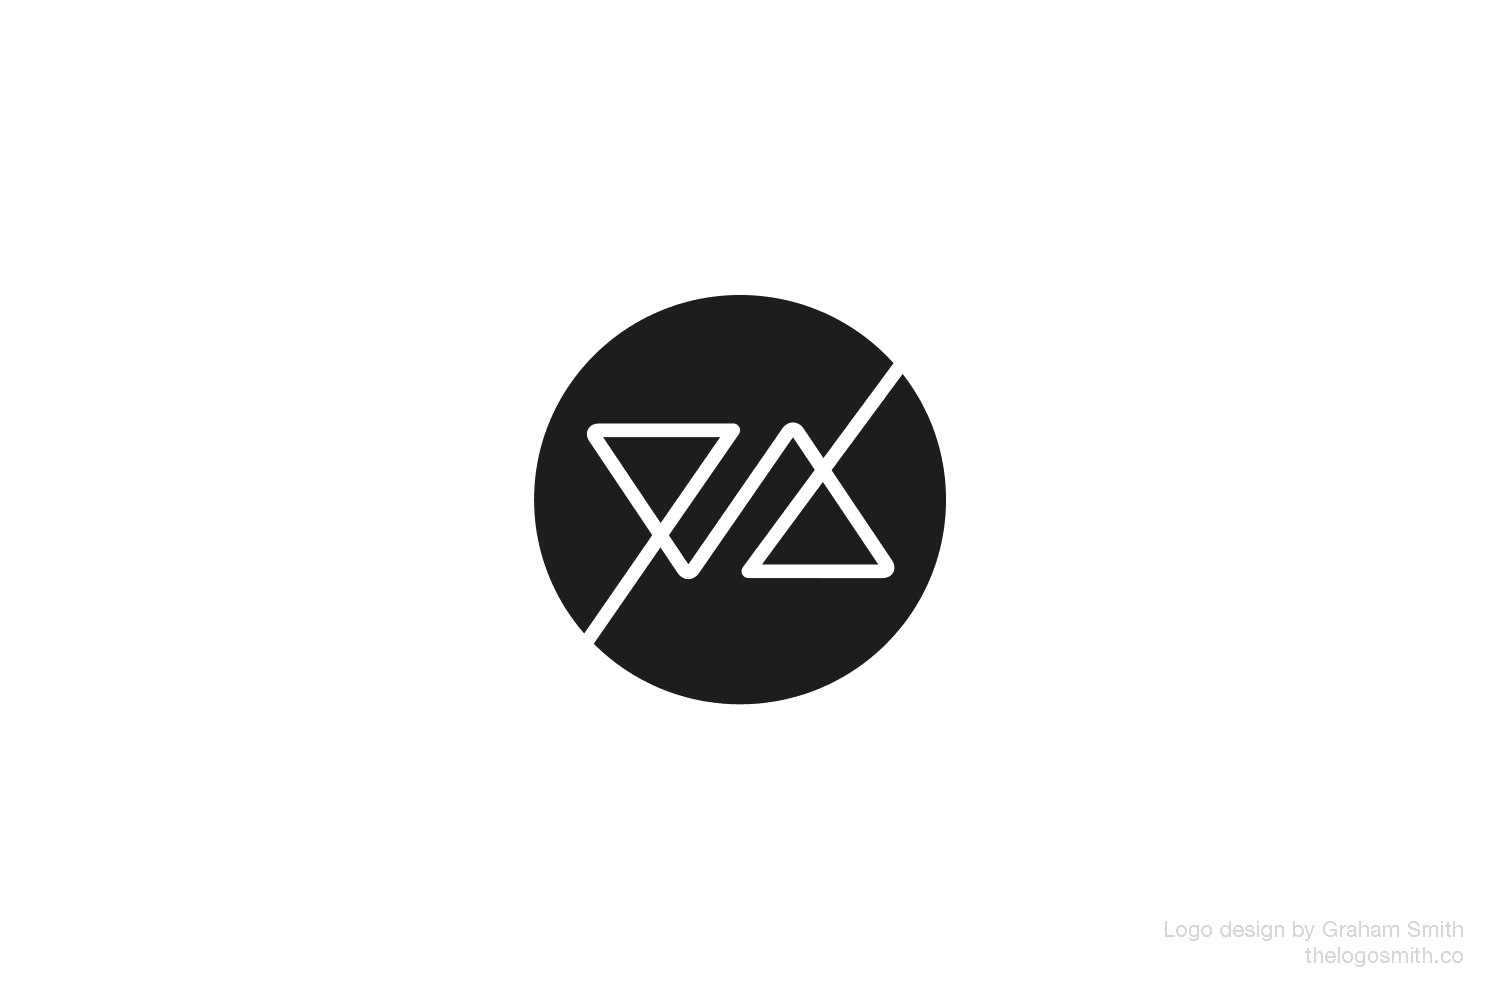 Av Logo - My Stolen AV Logo Design: Latest Update